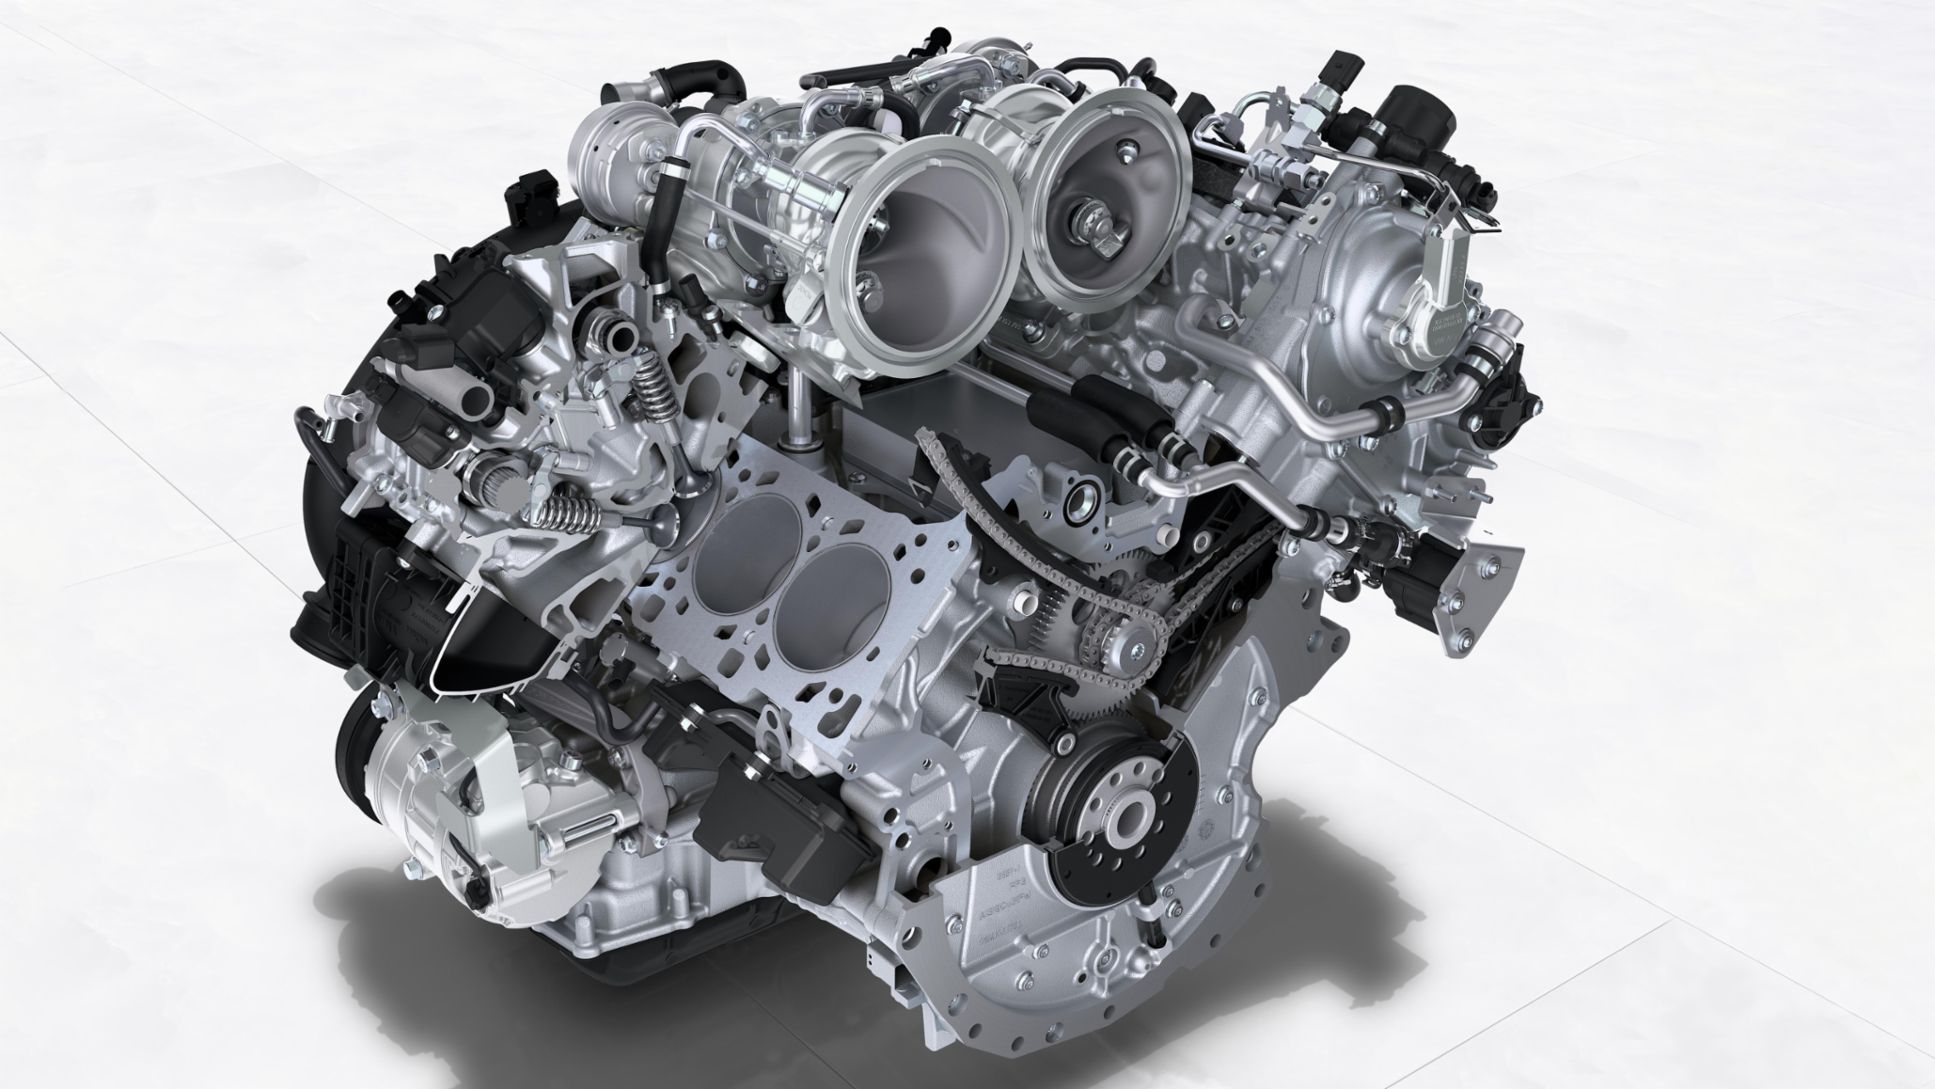 Macan Turbo - 2,9-Liter-V6-Turbo-Motor, 2019, Porsche AG